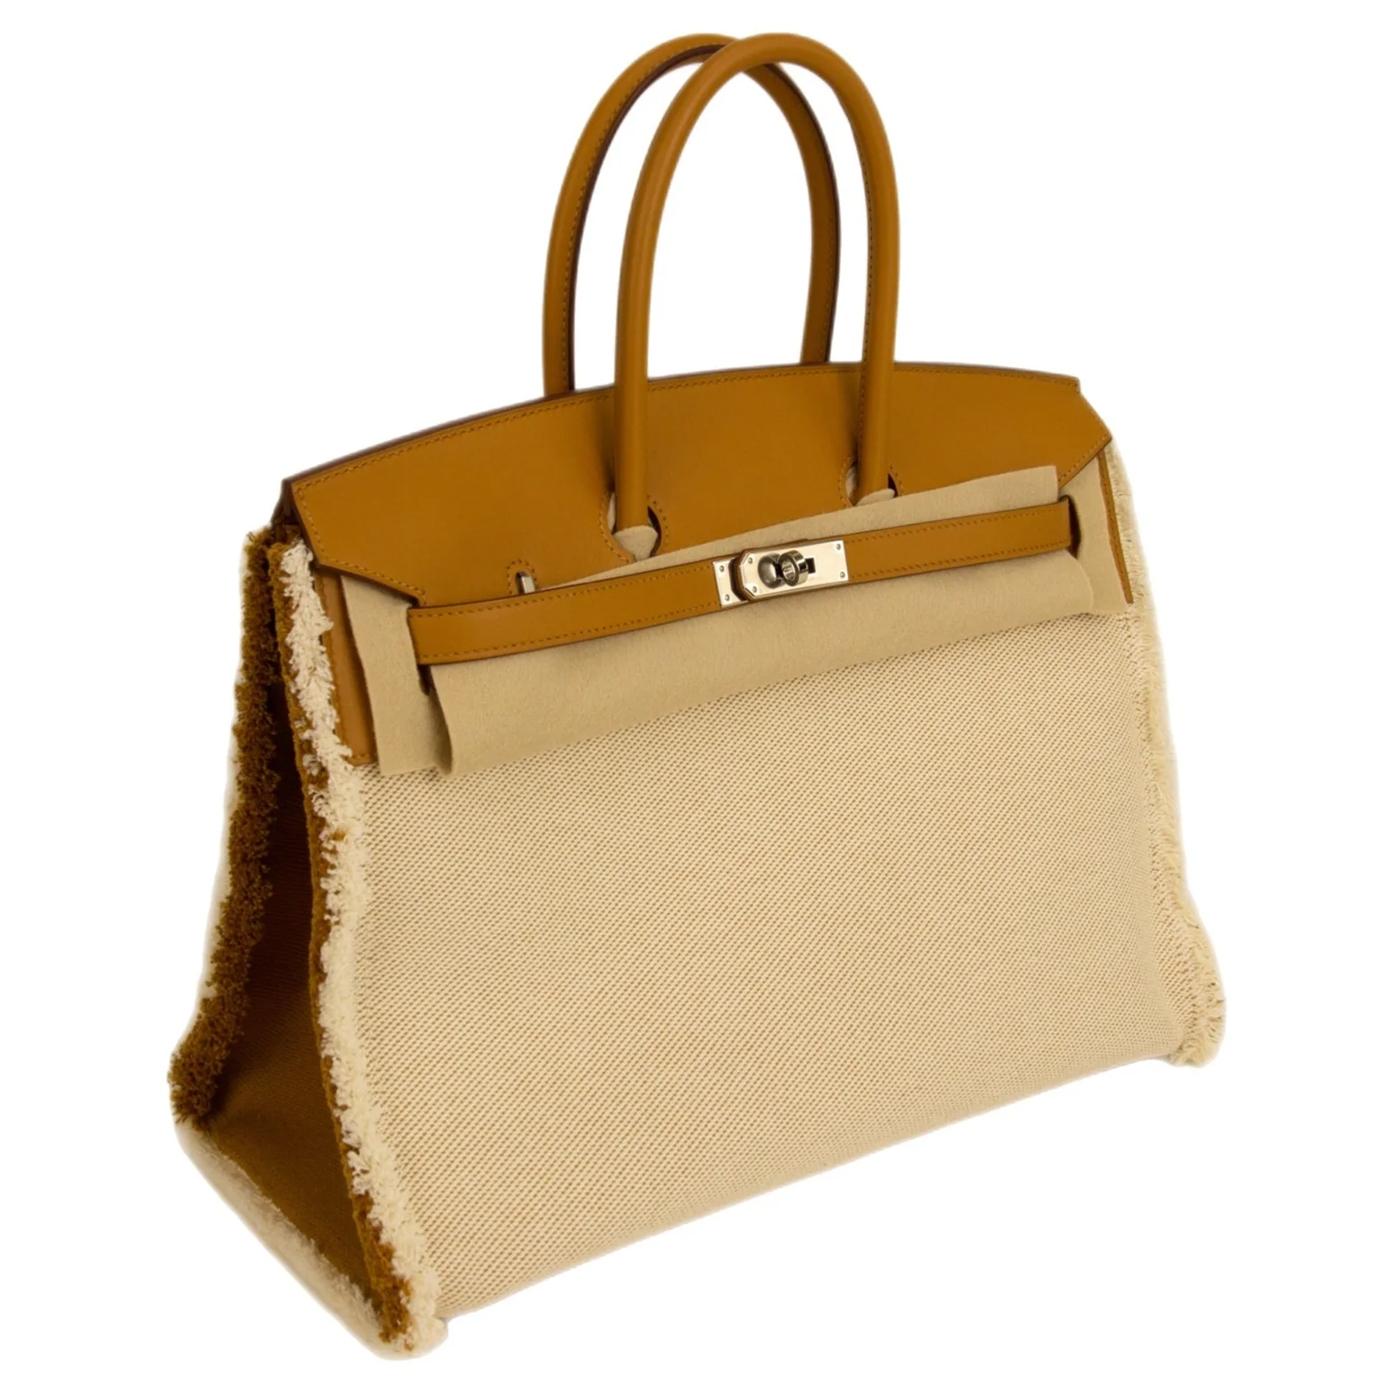 Le sac Birkin est un sac à main pour femme de la marque de mode de luxe Hermès, fabriqué à la main depuis 1984 et portant le nom de l'actrice Jane Birkin. Ce sac, comme le sac Kelly, a également été conçu par Hermès dans les années 1930, un